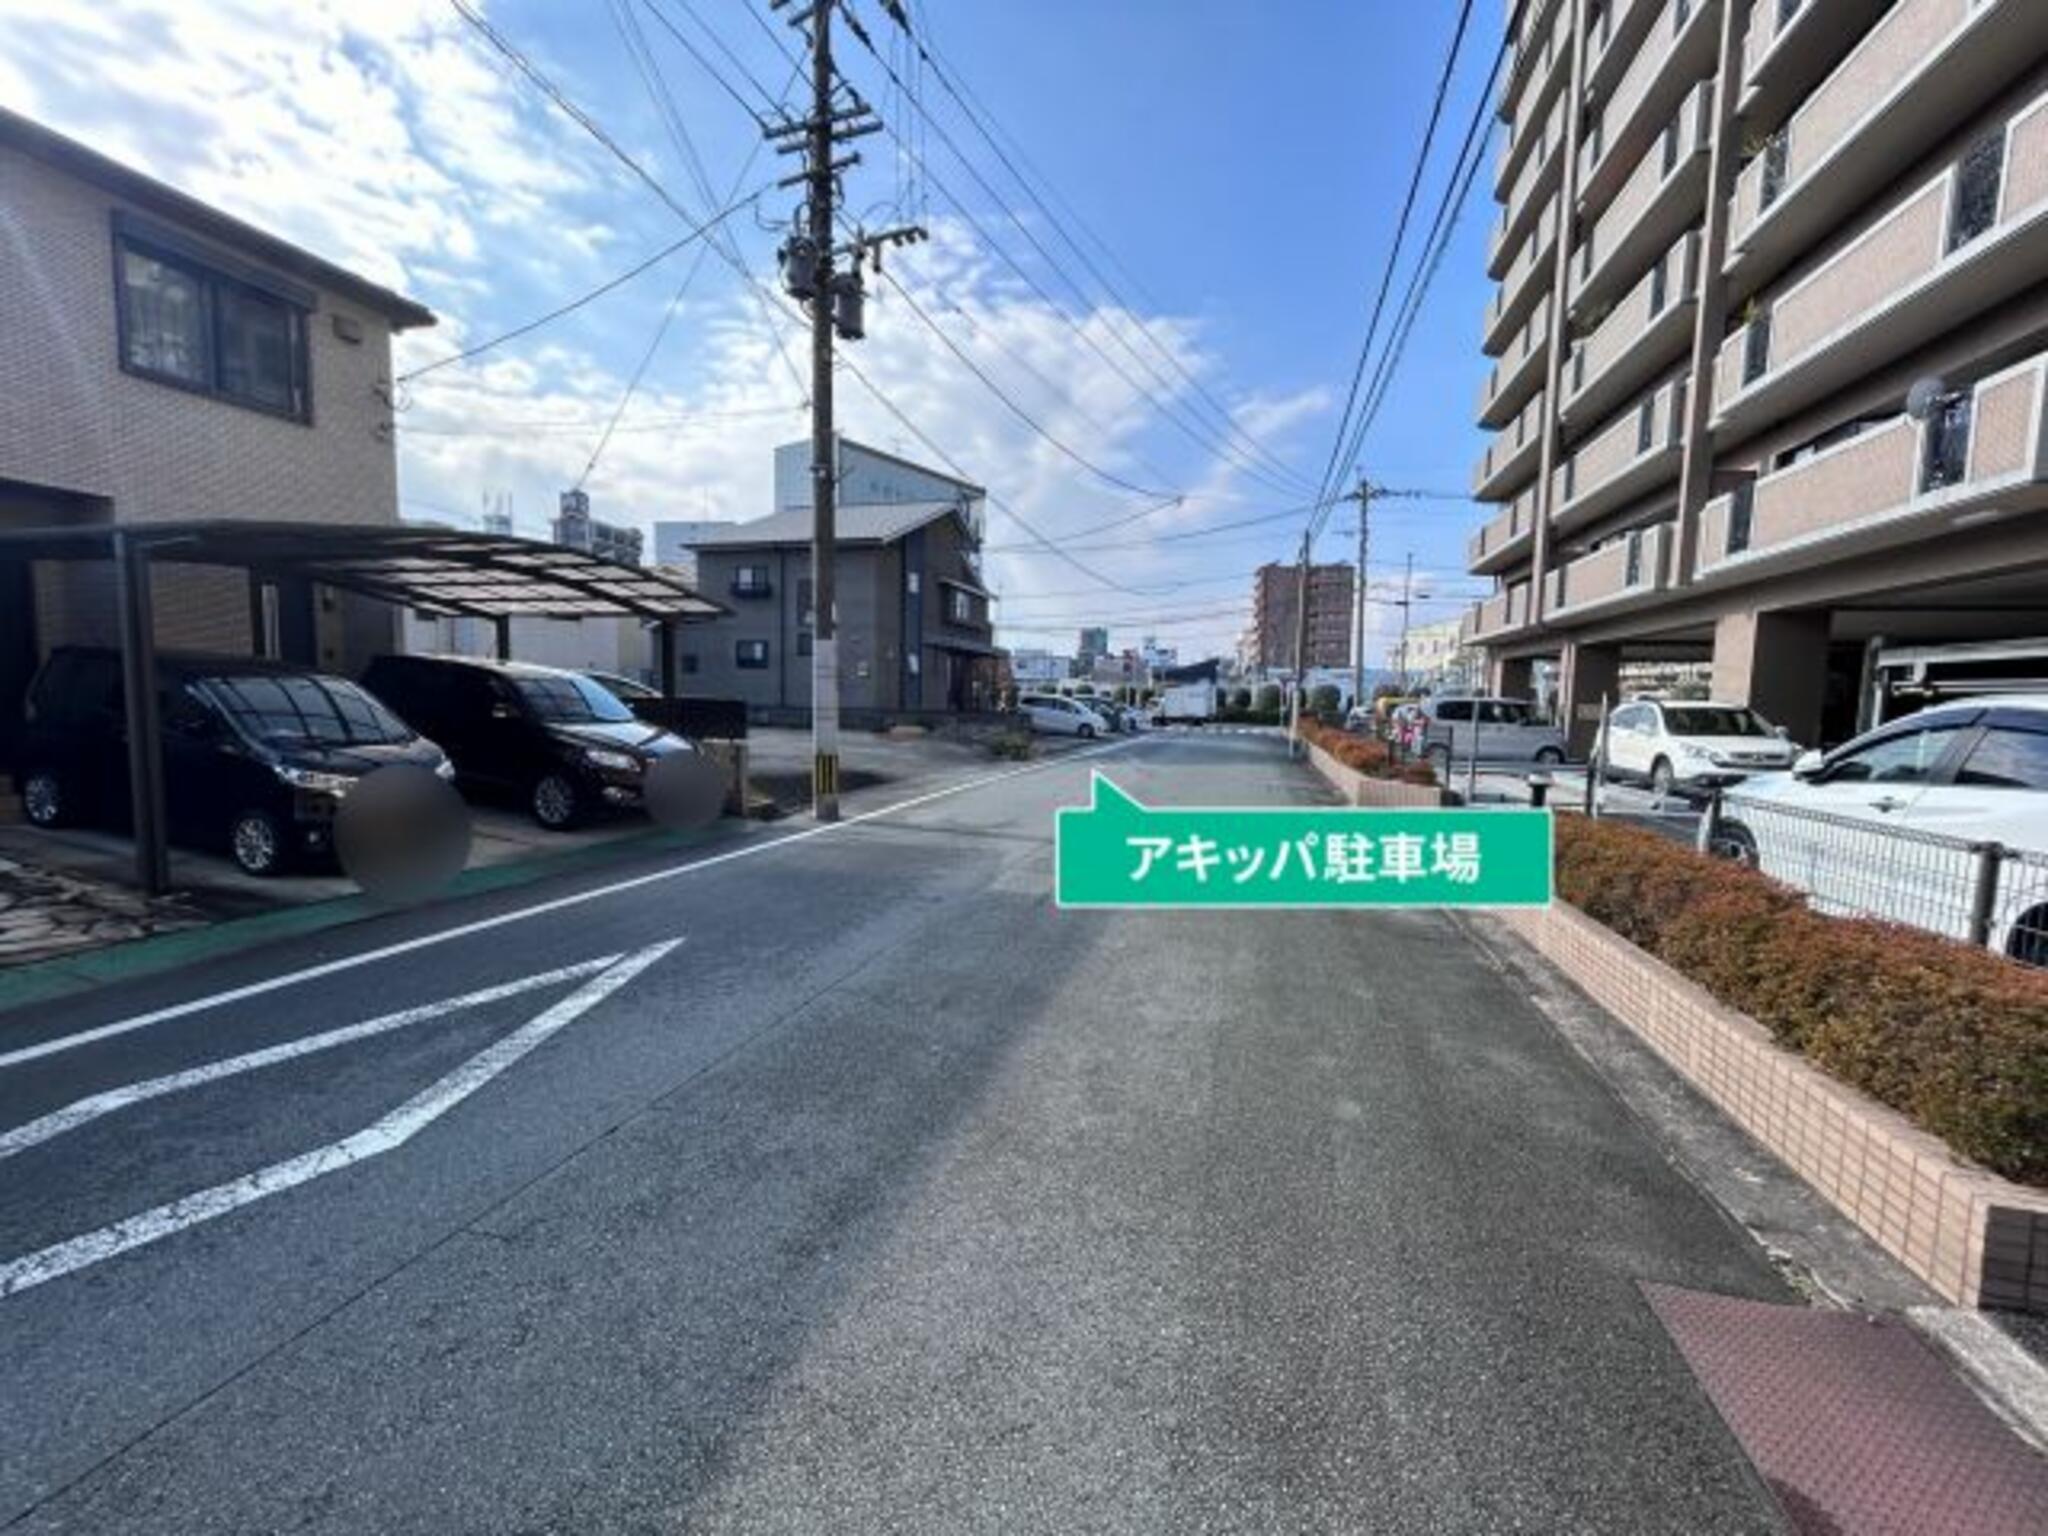 akippa駐車場:熊本県熊本市中央区新大江1丁目19-2の代表写真2